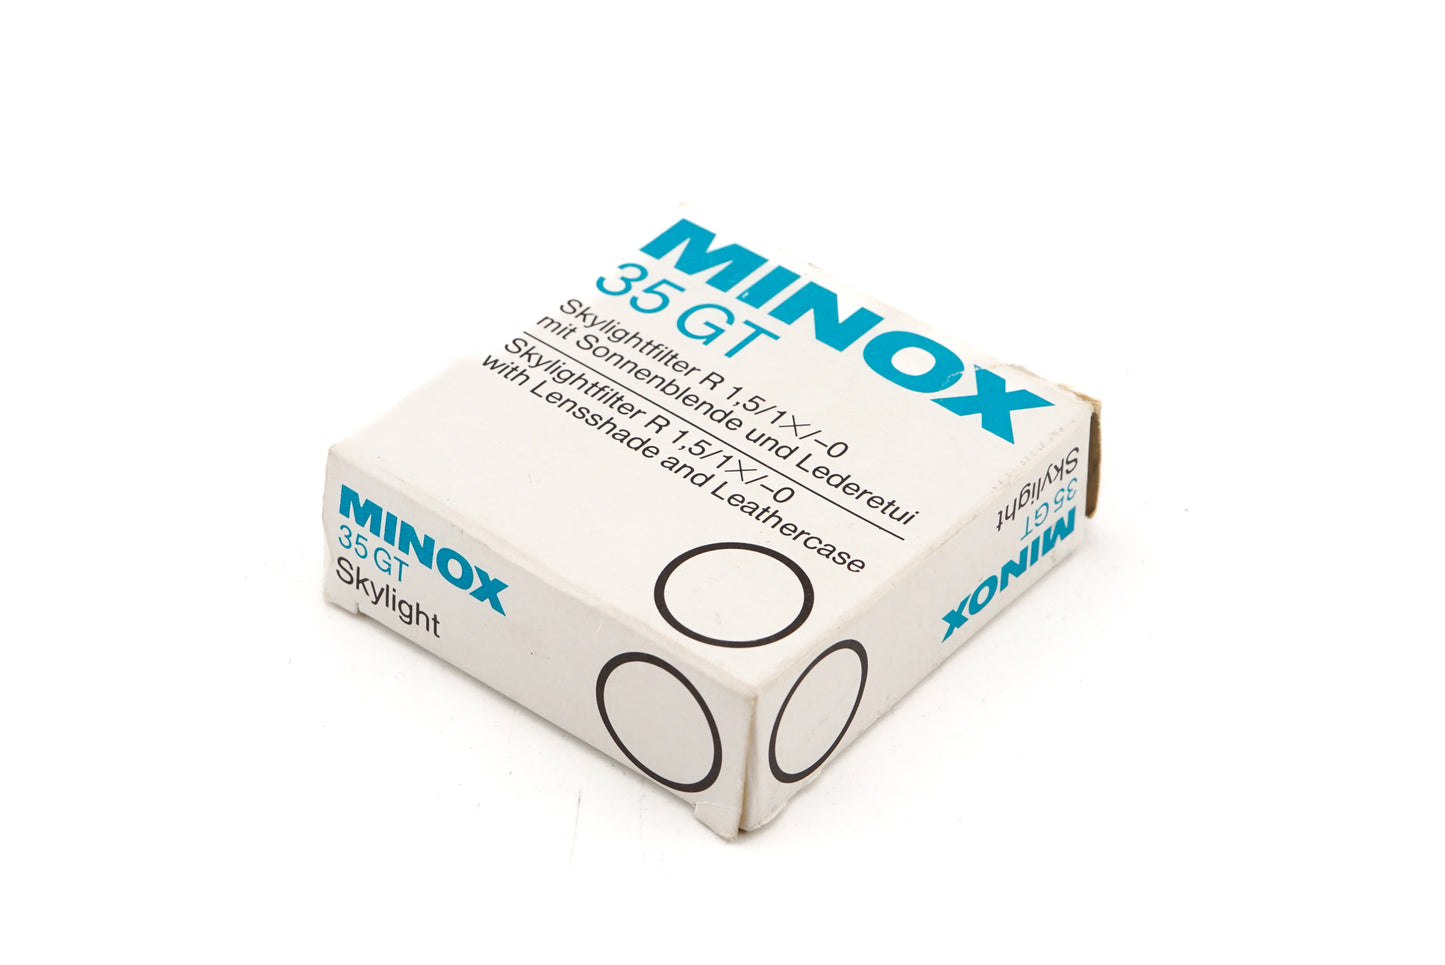 Minox Push-On Skylight Filter Lens Hood for Minox 35